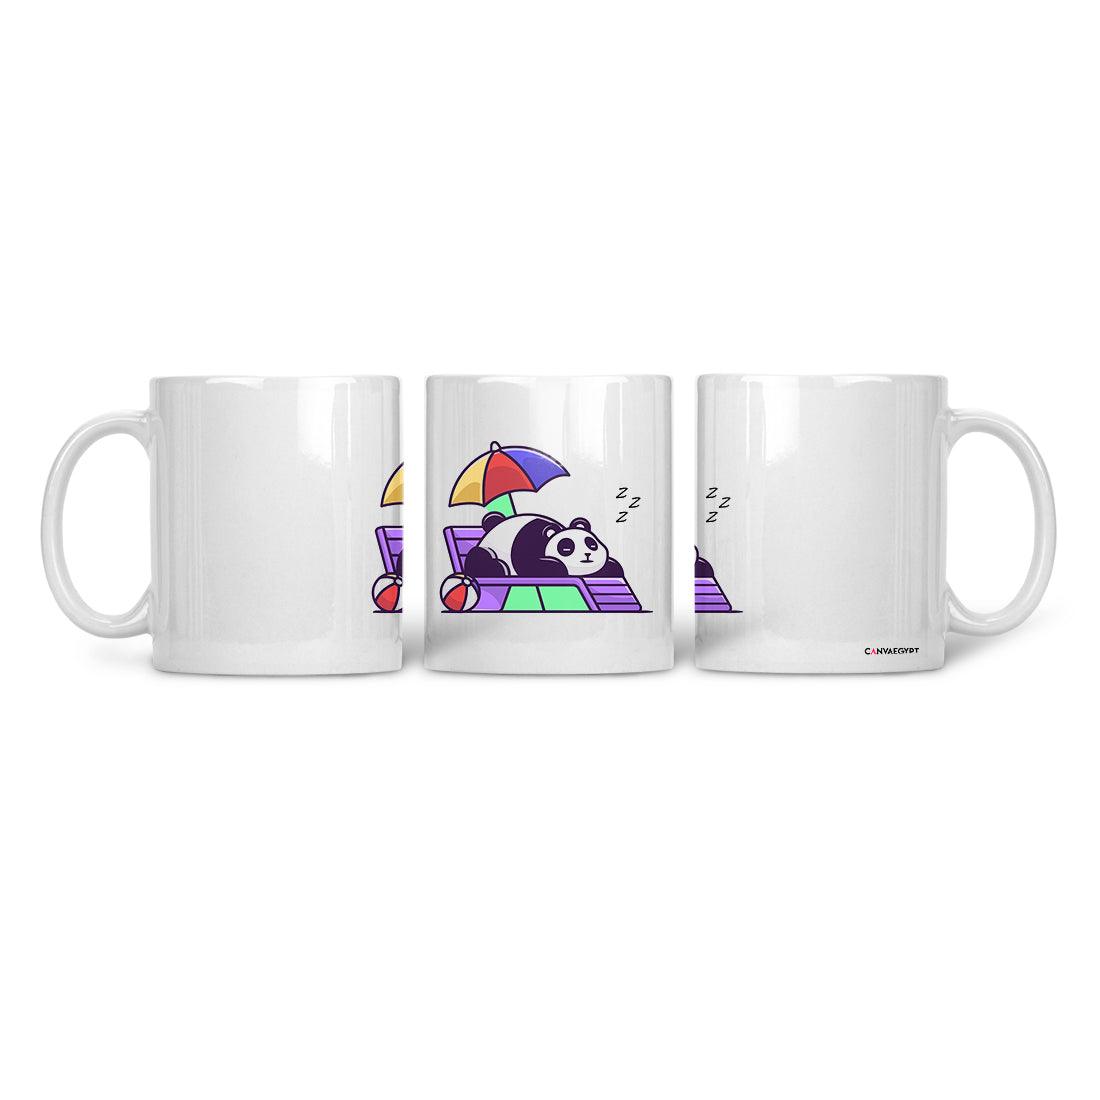 Ceramic Mug Sleeping Panda - CANVAEGYPT